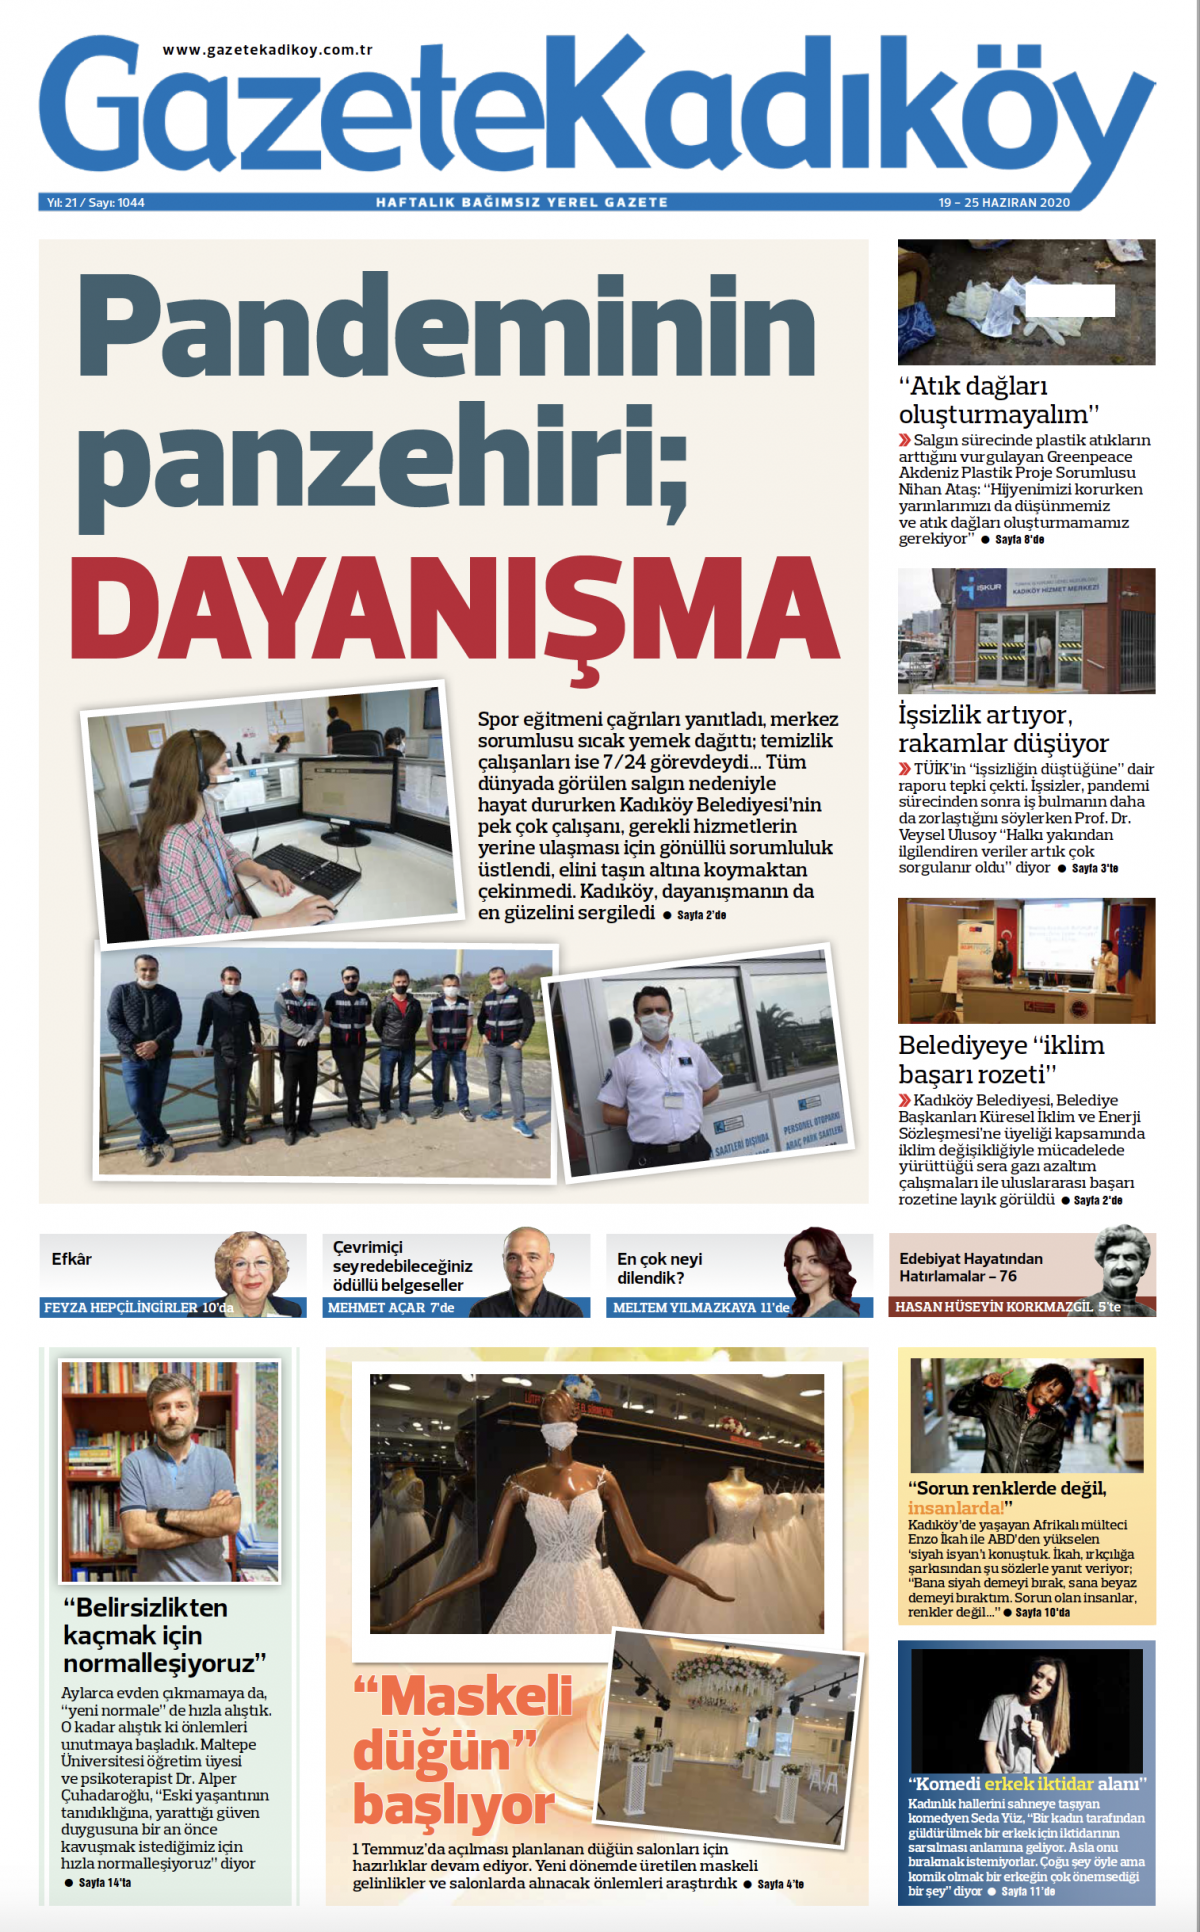 Gazete Kadıköy - 1044. Sayı